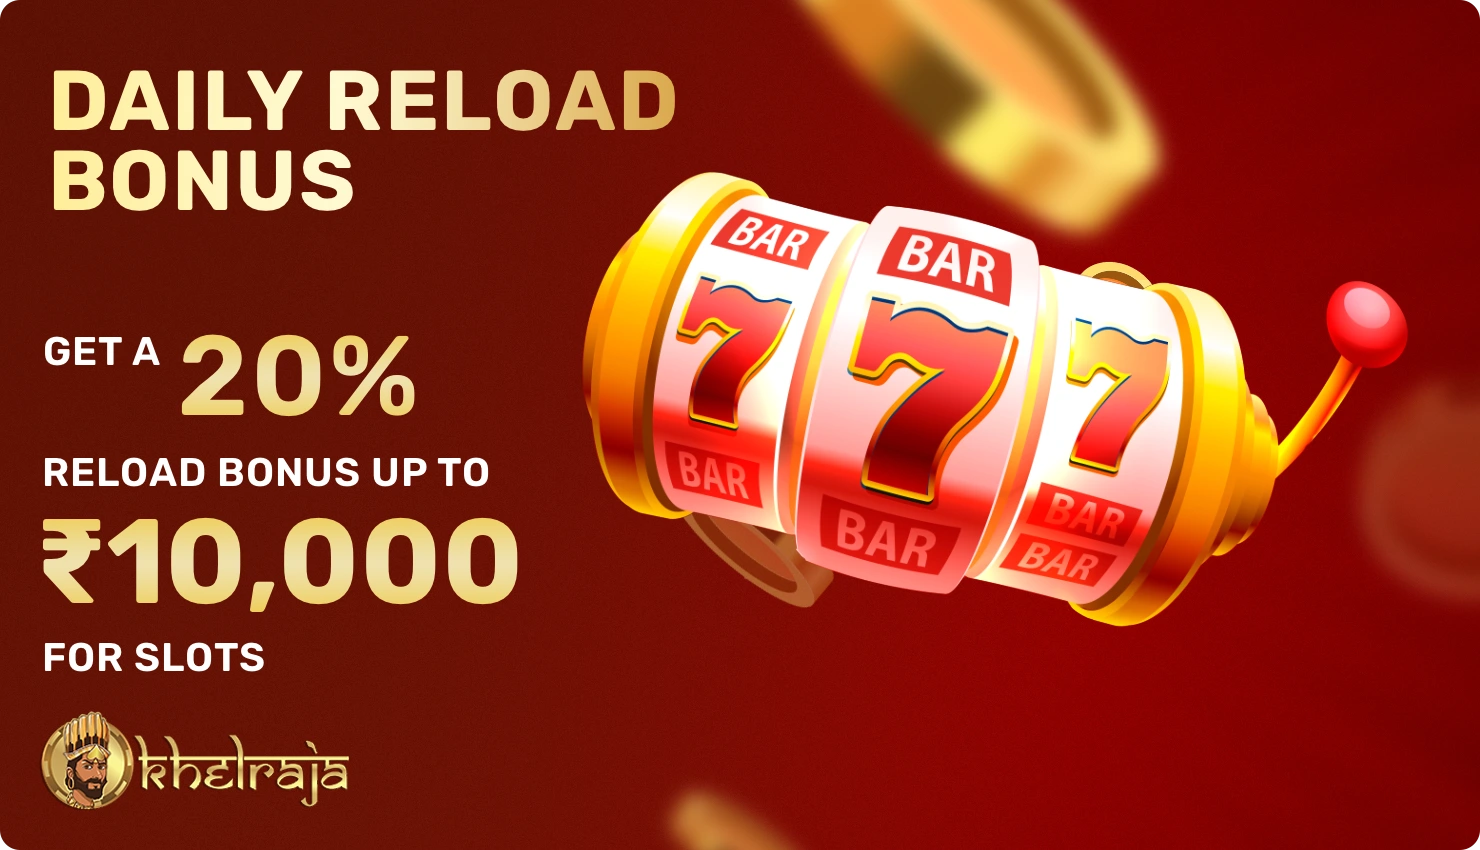 Daily reload bonus for slots at Khelraja casino